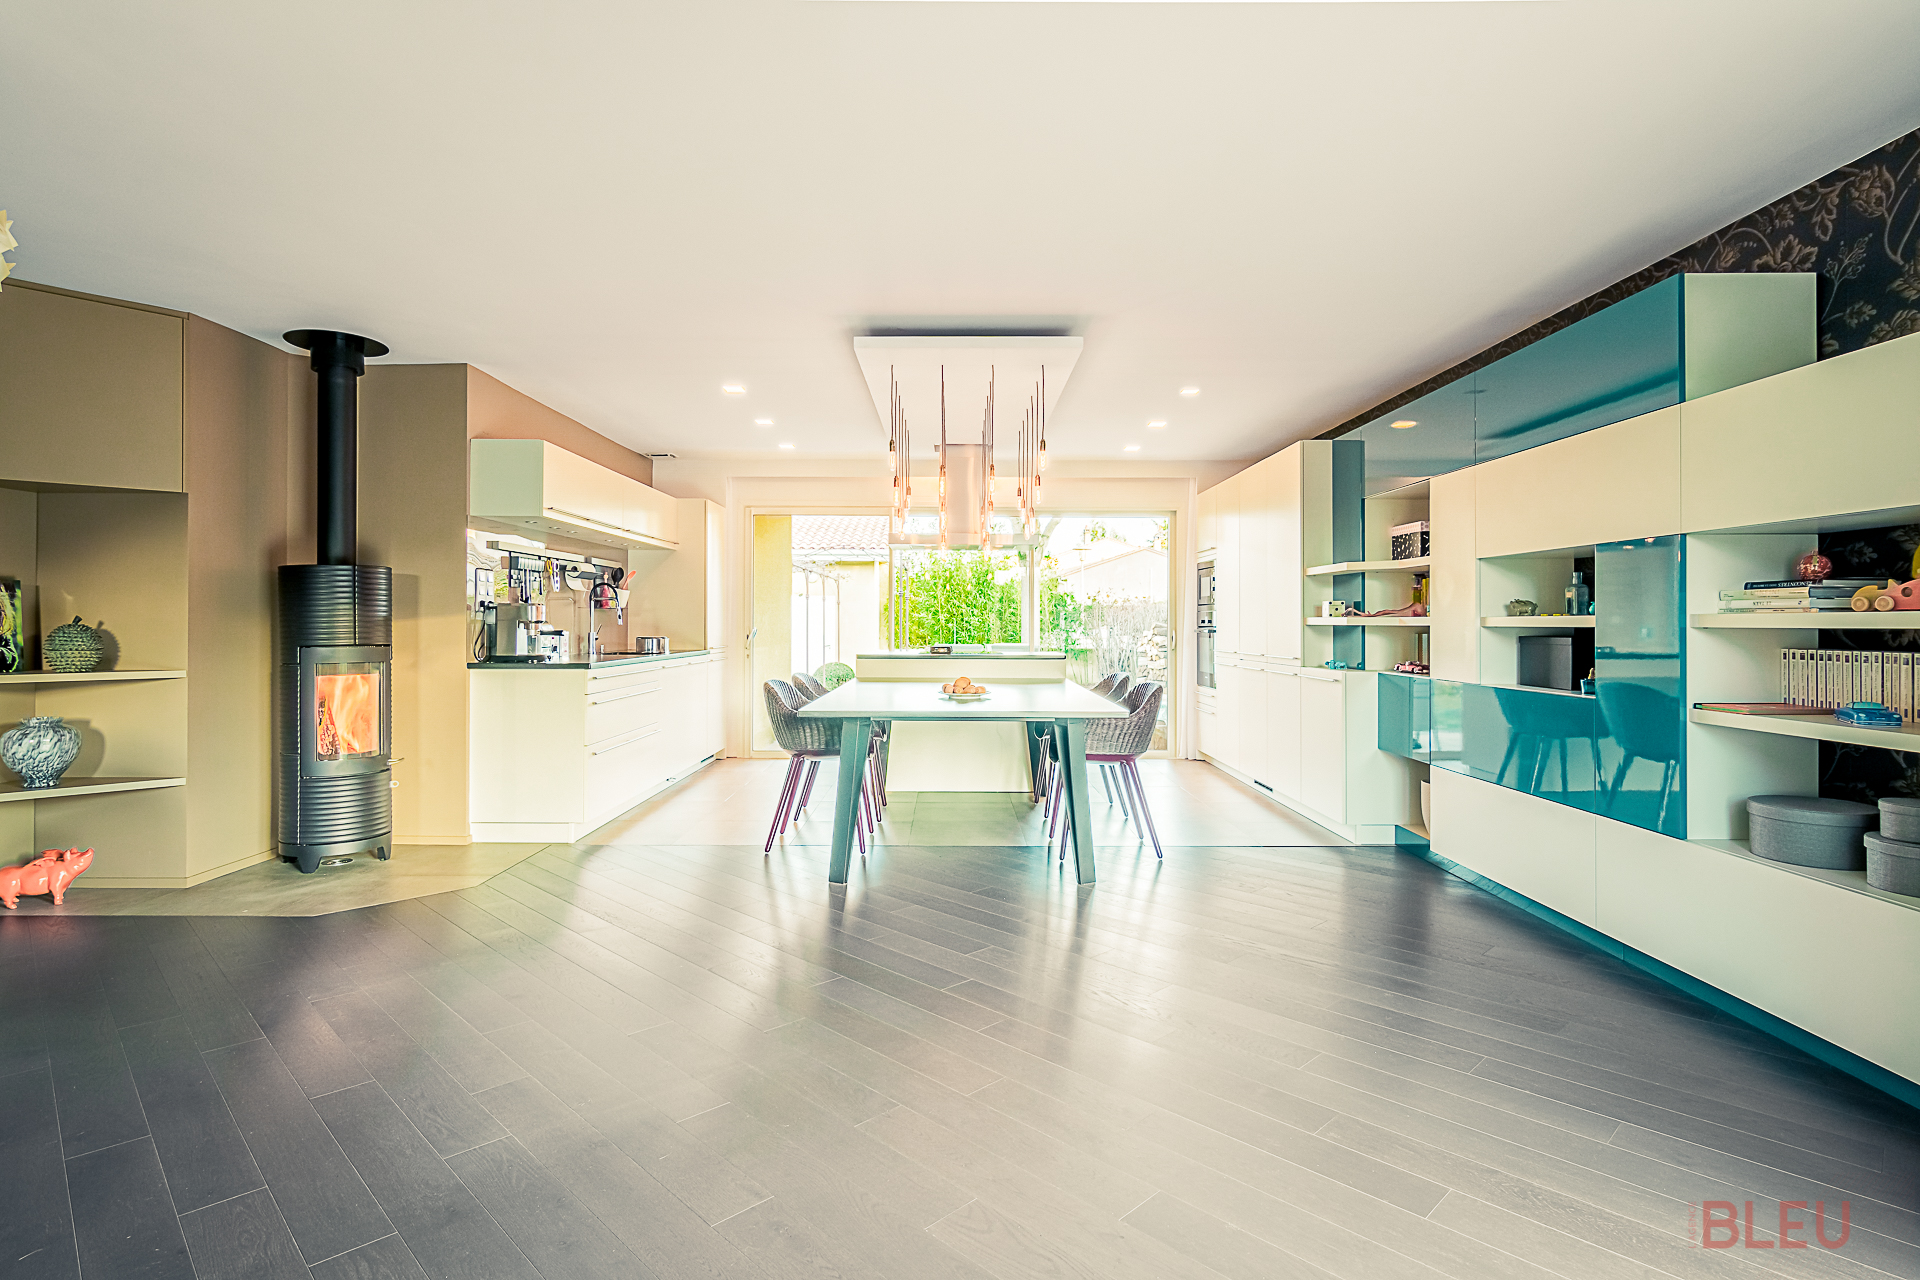 Architecte intérieur Paris transforme un espace vie lumineux avec cuisine ouverte moderne et salle à manger intégrée dans une maison rénovée.